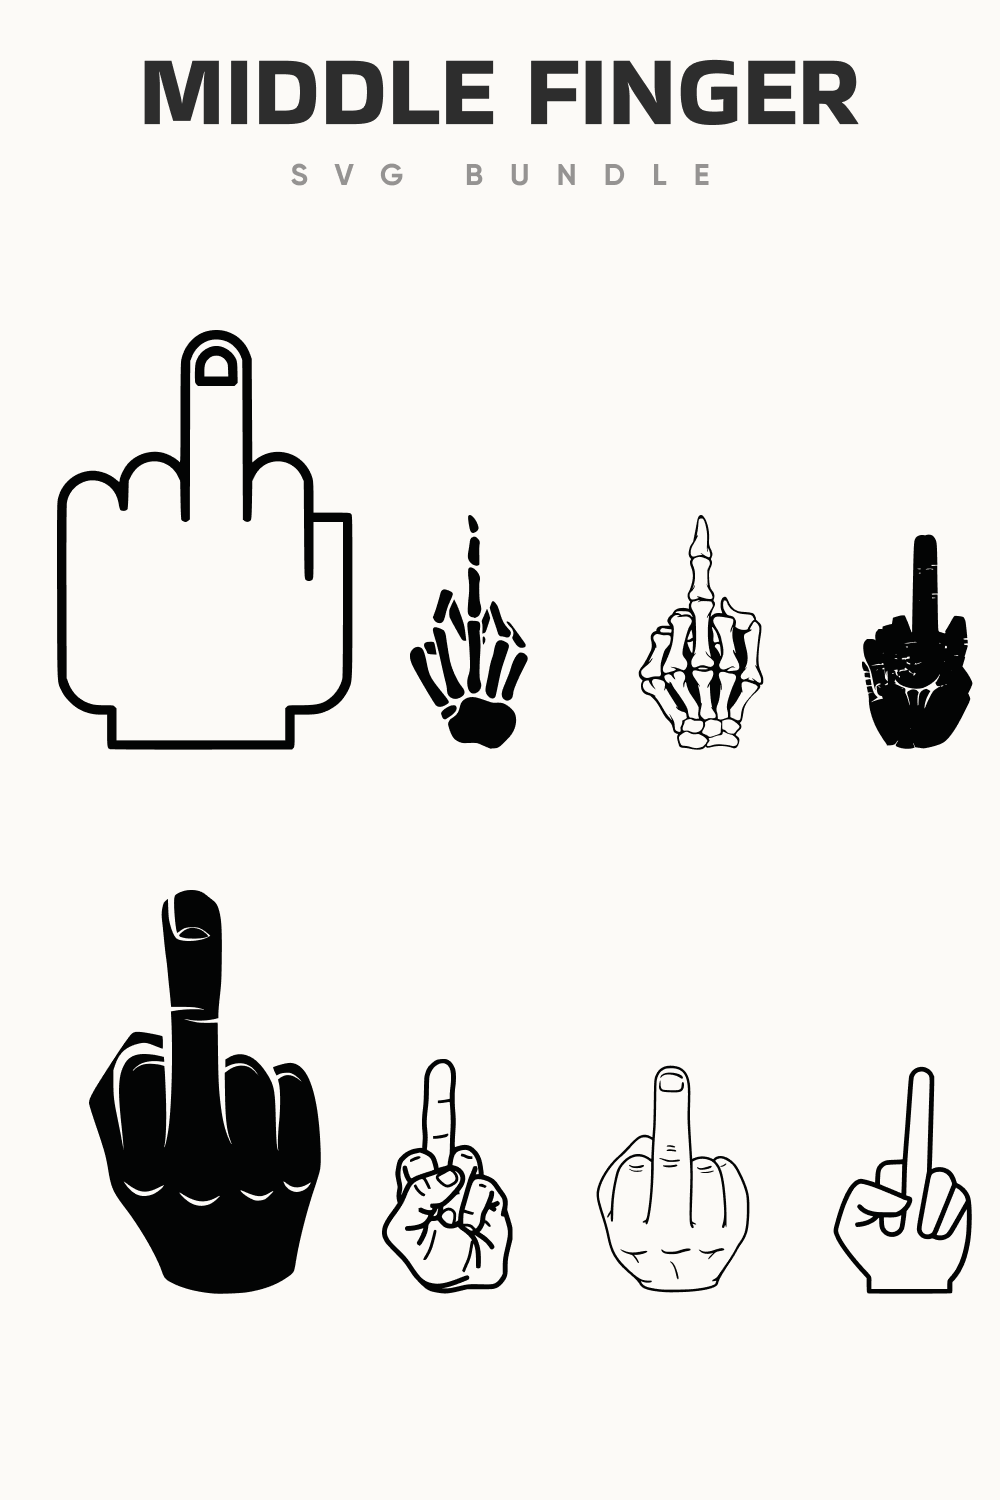 Diverse of middle finger kinds.